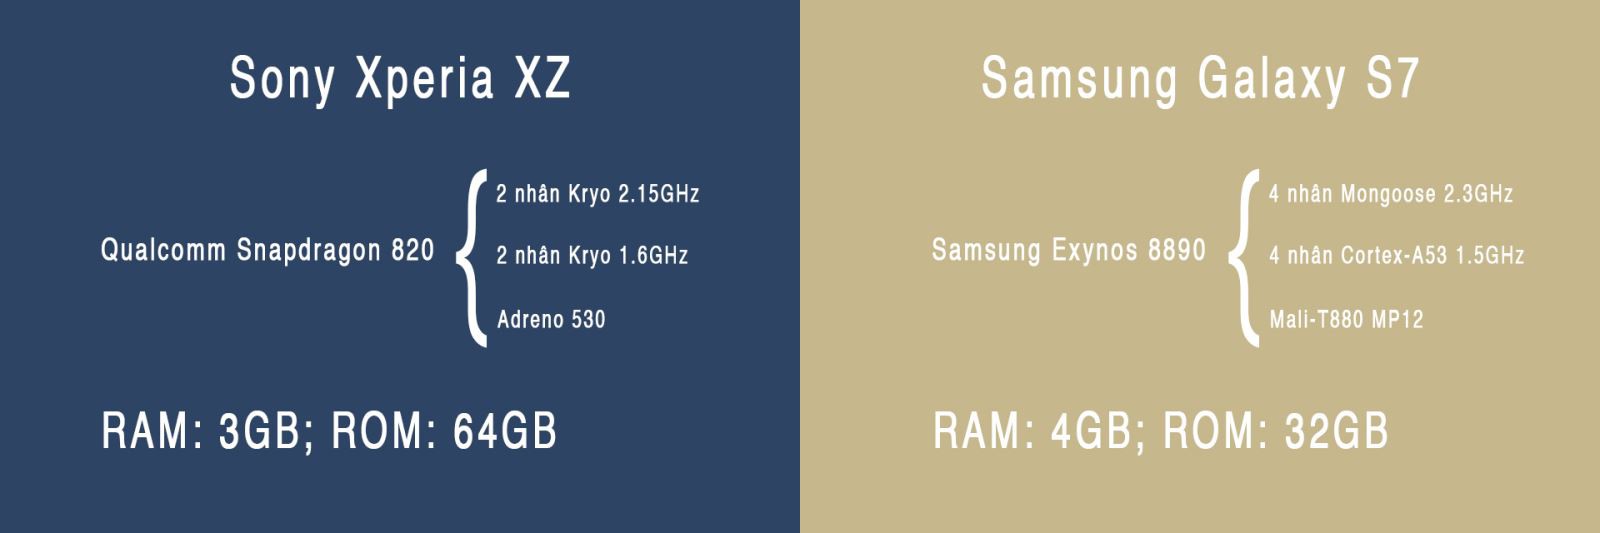 So sánh cấu hình Xperia XZ và Galaxy S7